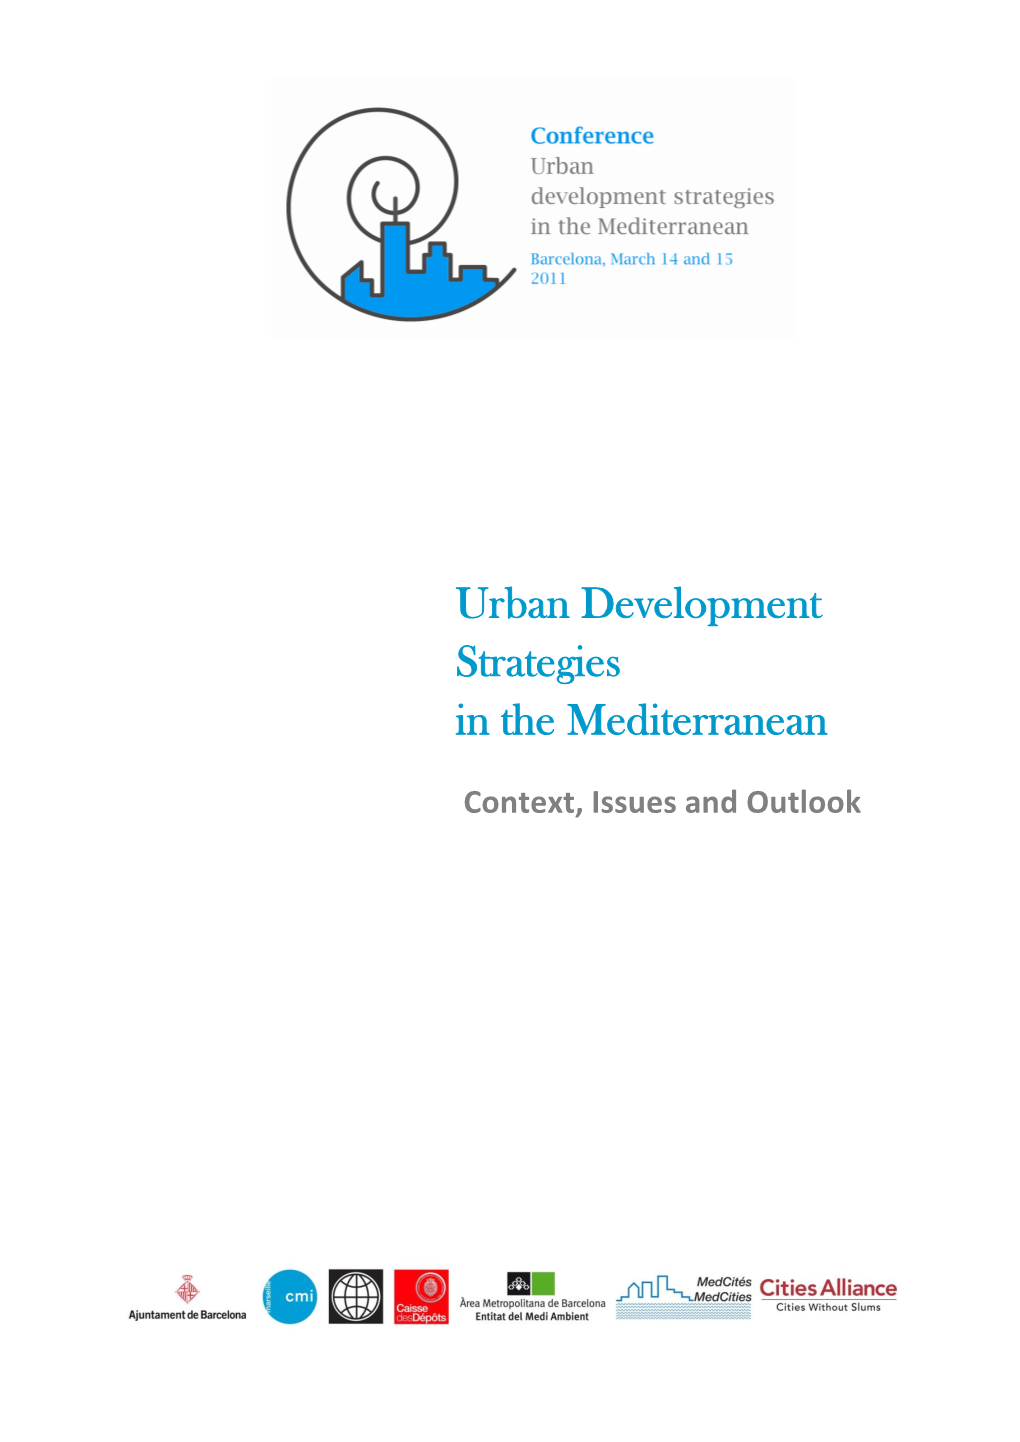 Urban Development Strategies in the Mediterranean